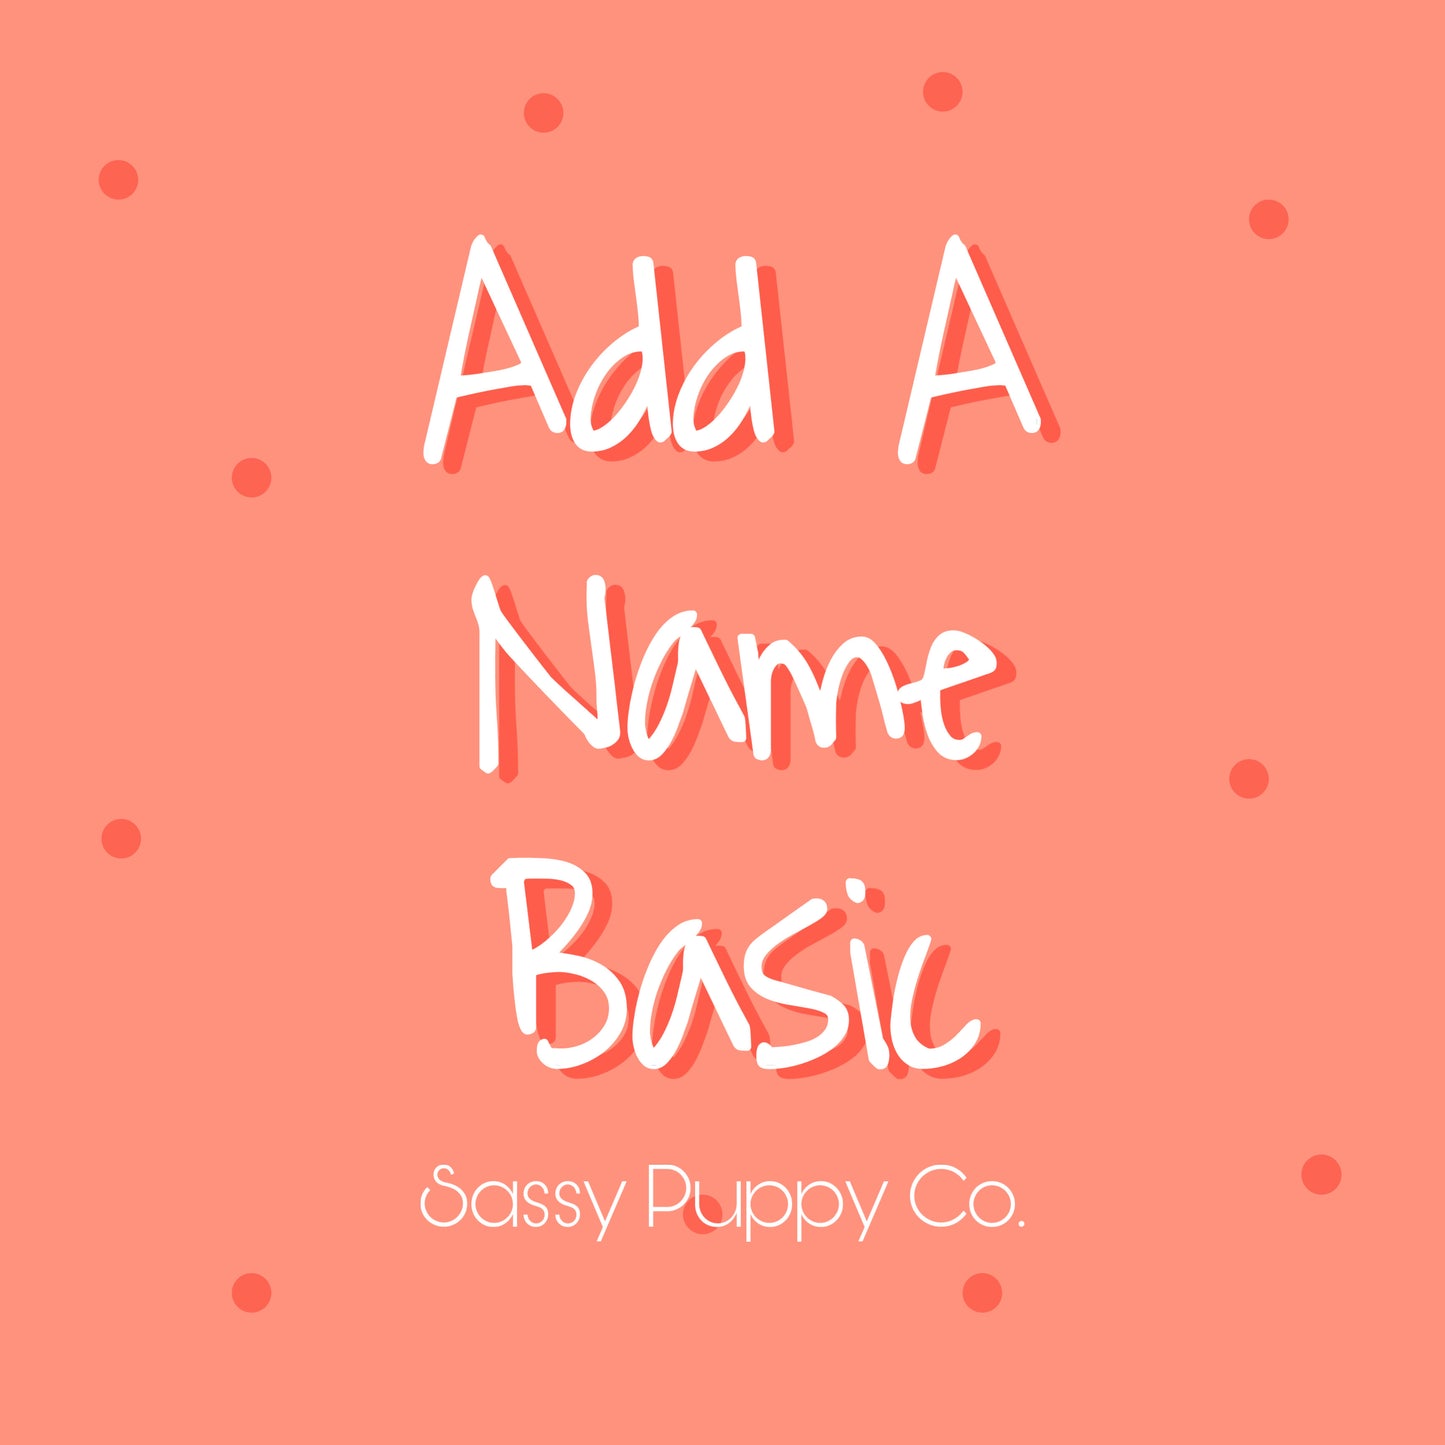 Add A Name - Basic